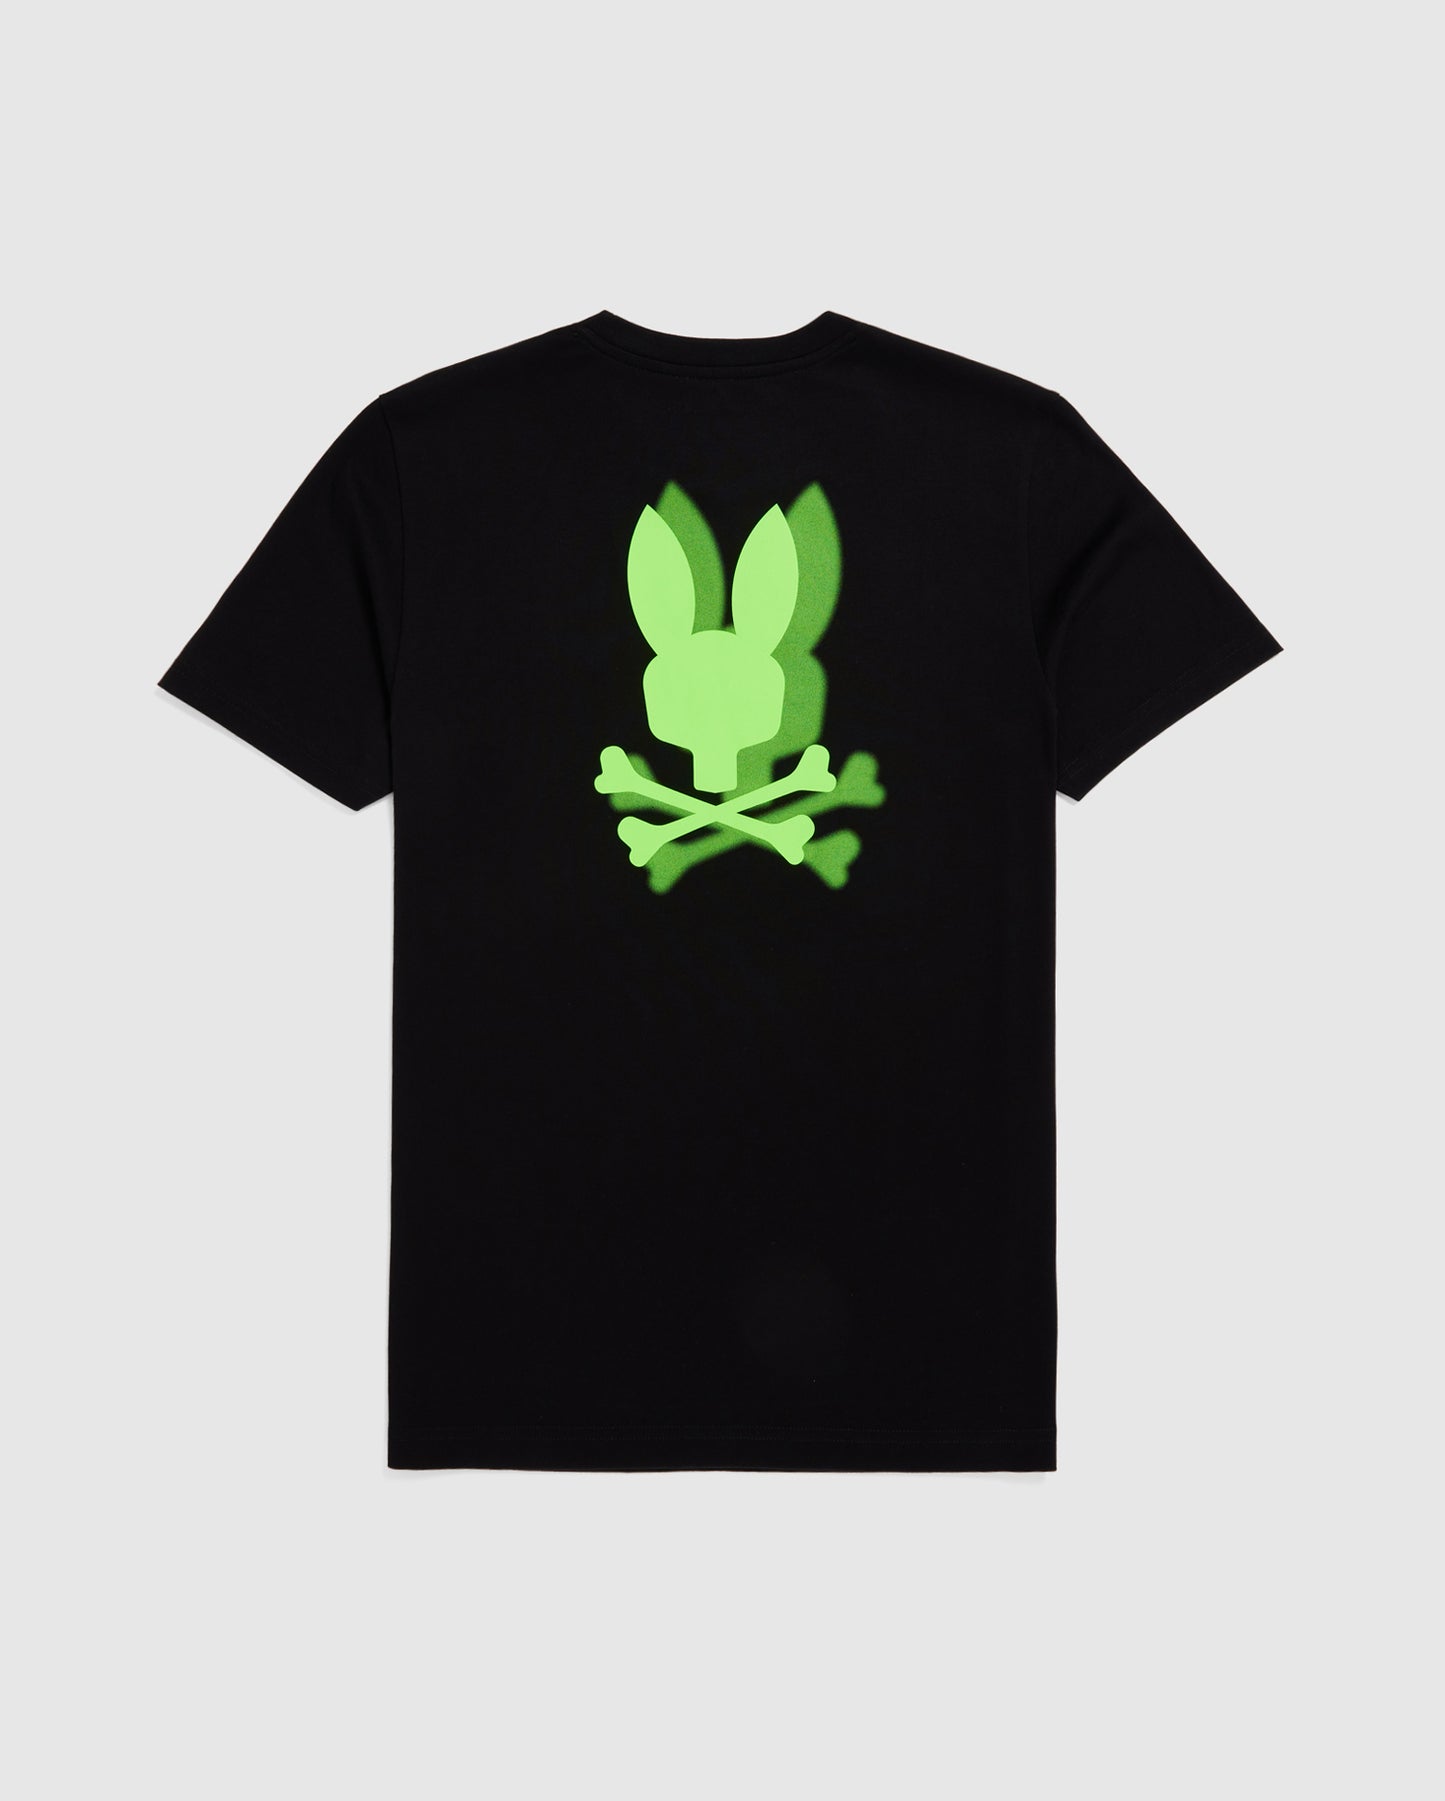 Buy And Sell Young LA Shirts - Mens 417 Graphic Rambo Tees Black